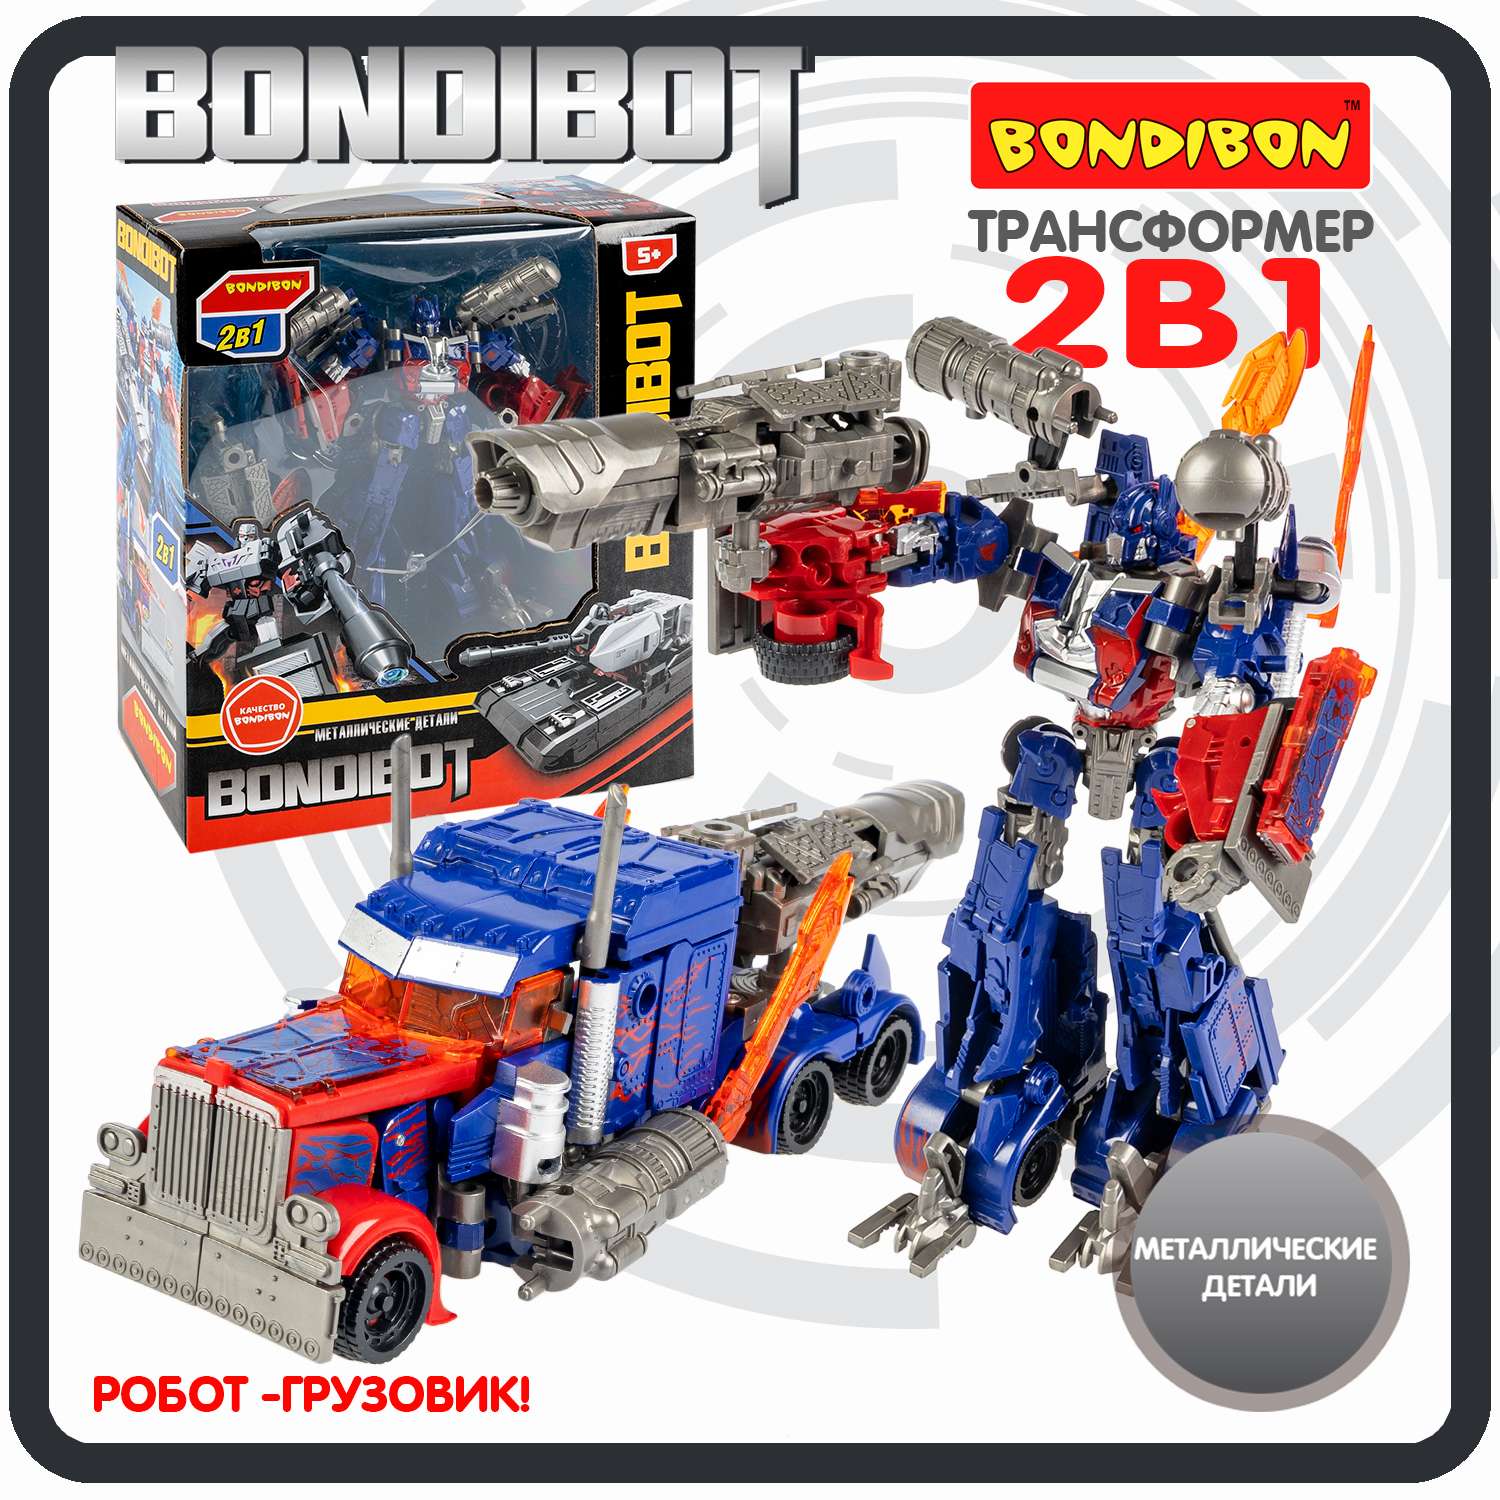 Трансформер BONDIBON BONDIBOT 2 в 1 робот-грузовик с металлическими деталями синего цвета - фото 1